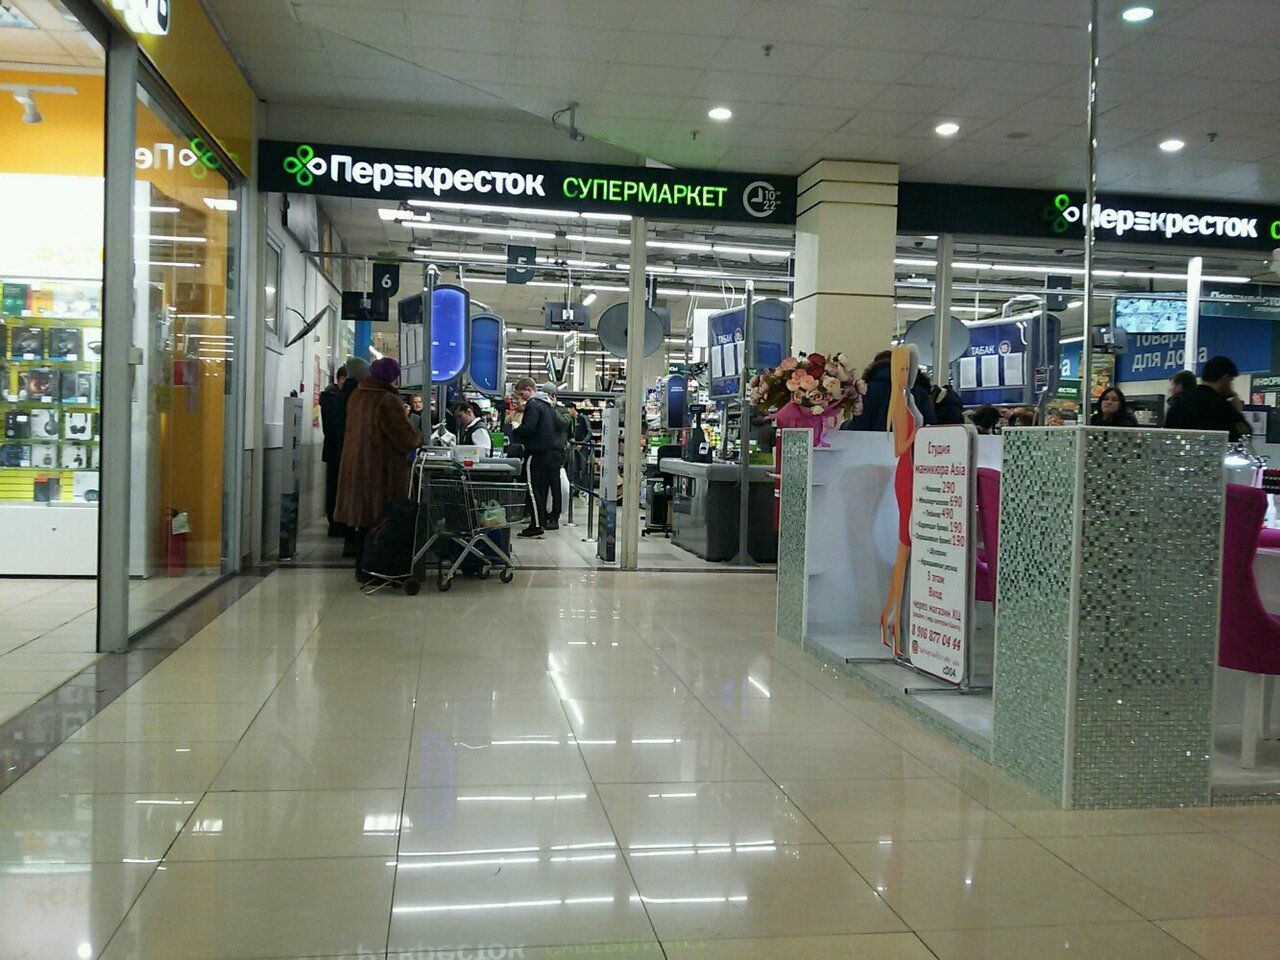 «Перекрёсток» — российская сеть супермаркетов, которая входит в состав X5 Group.